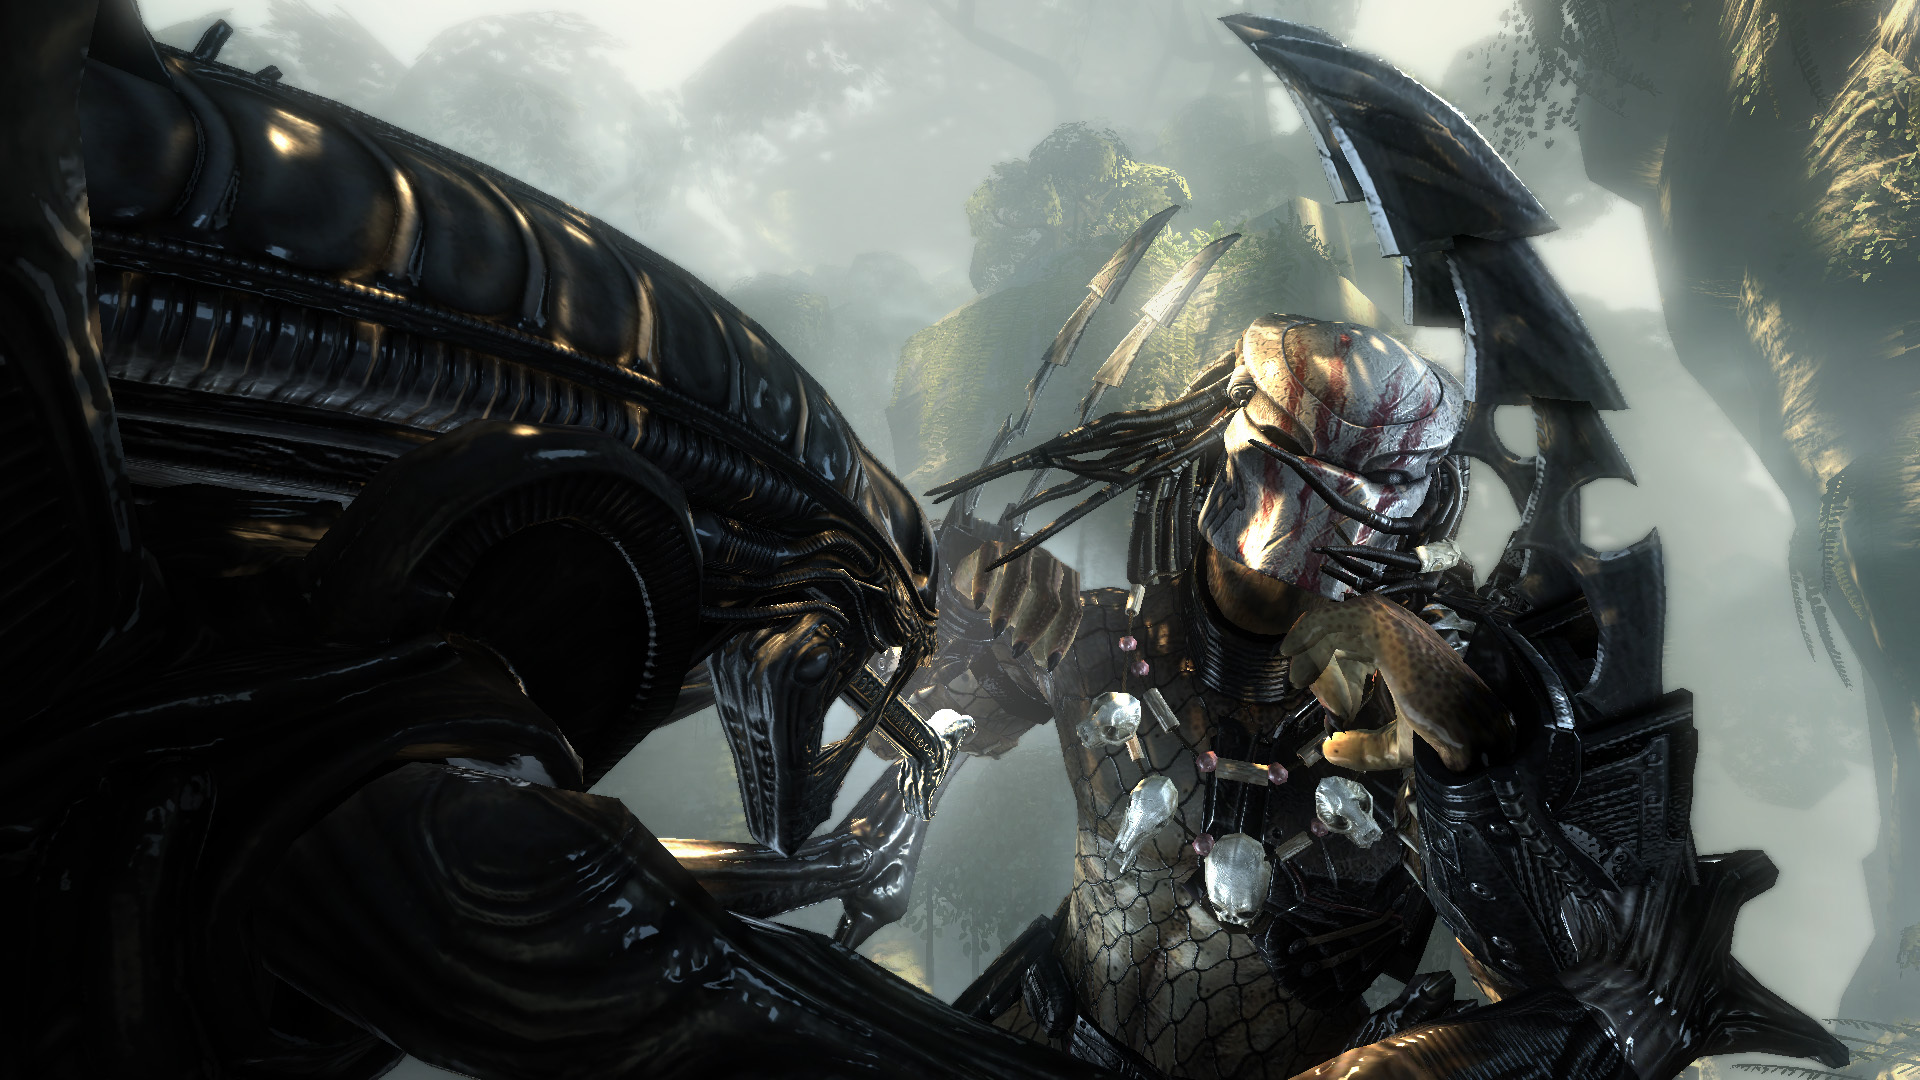 Aliens Versus Predator 2 - Metacritic